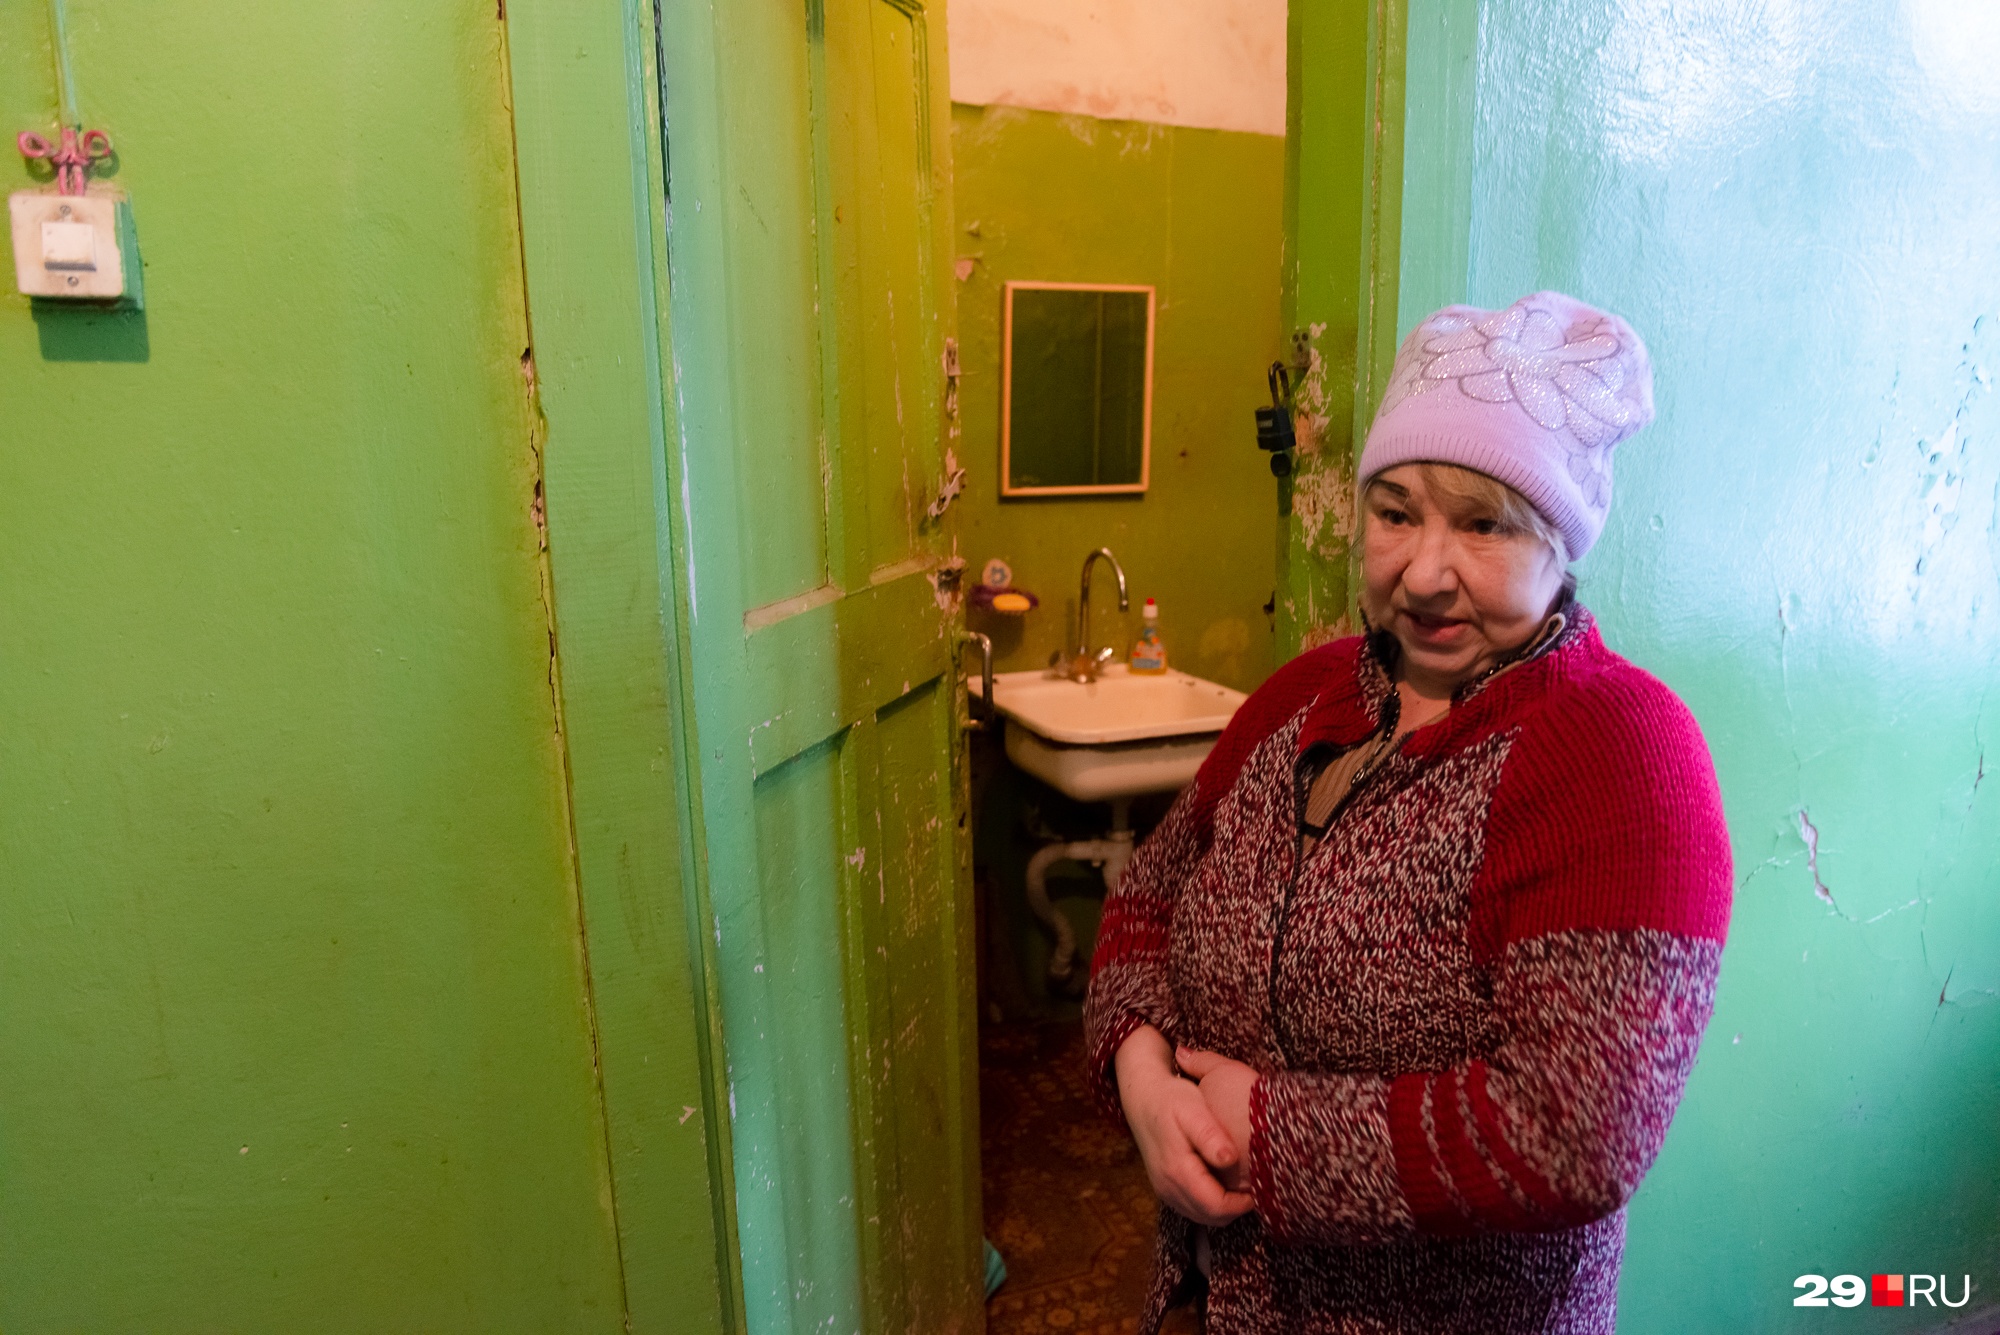 Местная жительница рассказывает, как у них провалился туалет и замерзли трубы. По ее словам, дом не признан аварийным